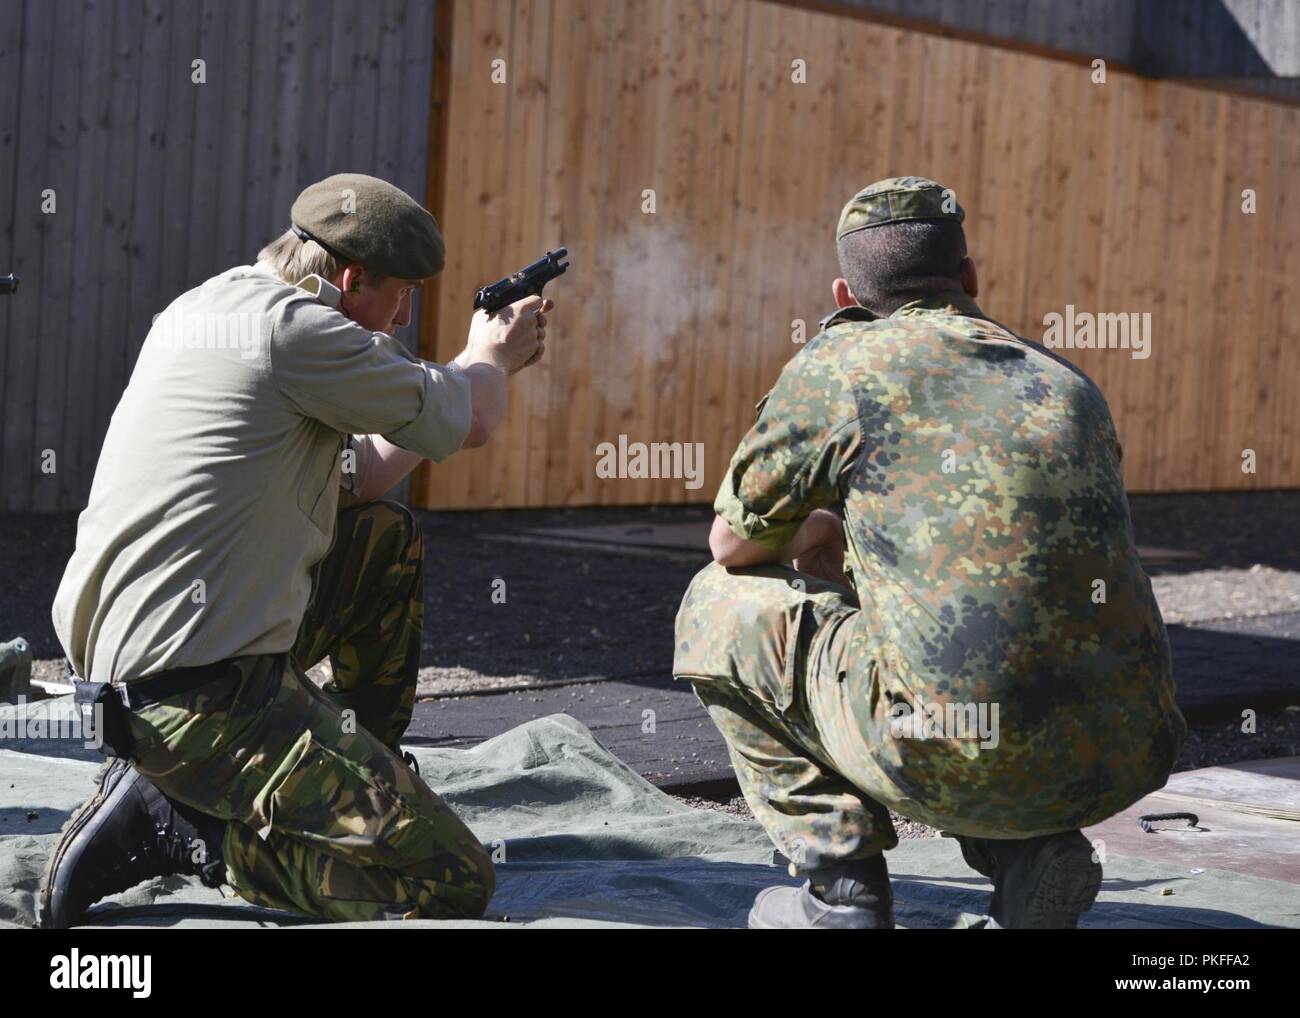 Un participant au concours de tir des Monti-Kali montre ses compétences à un tir au pistolet 9 mm Gamme Wackernheim complexe. Banque D'Images